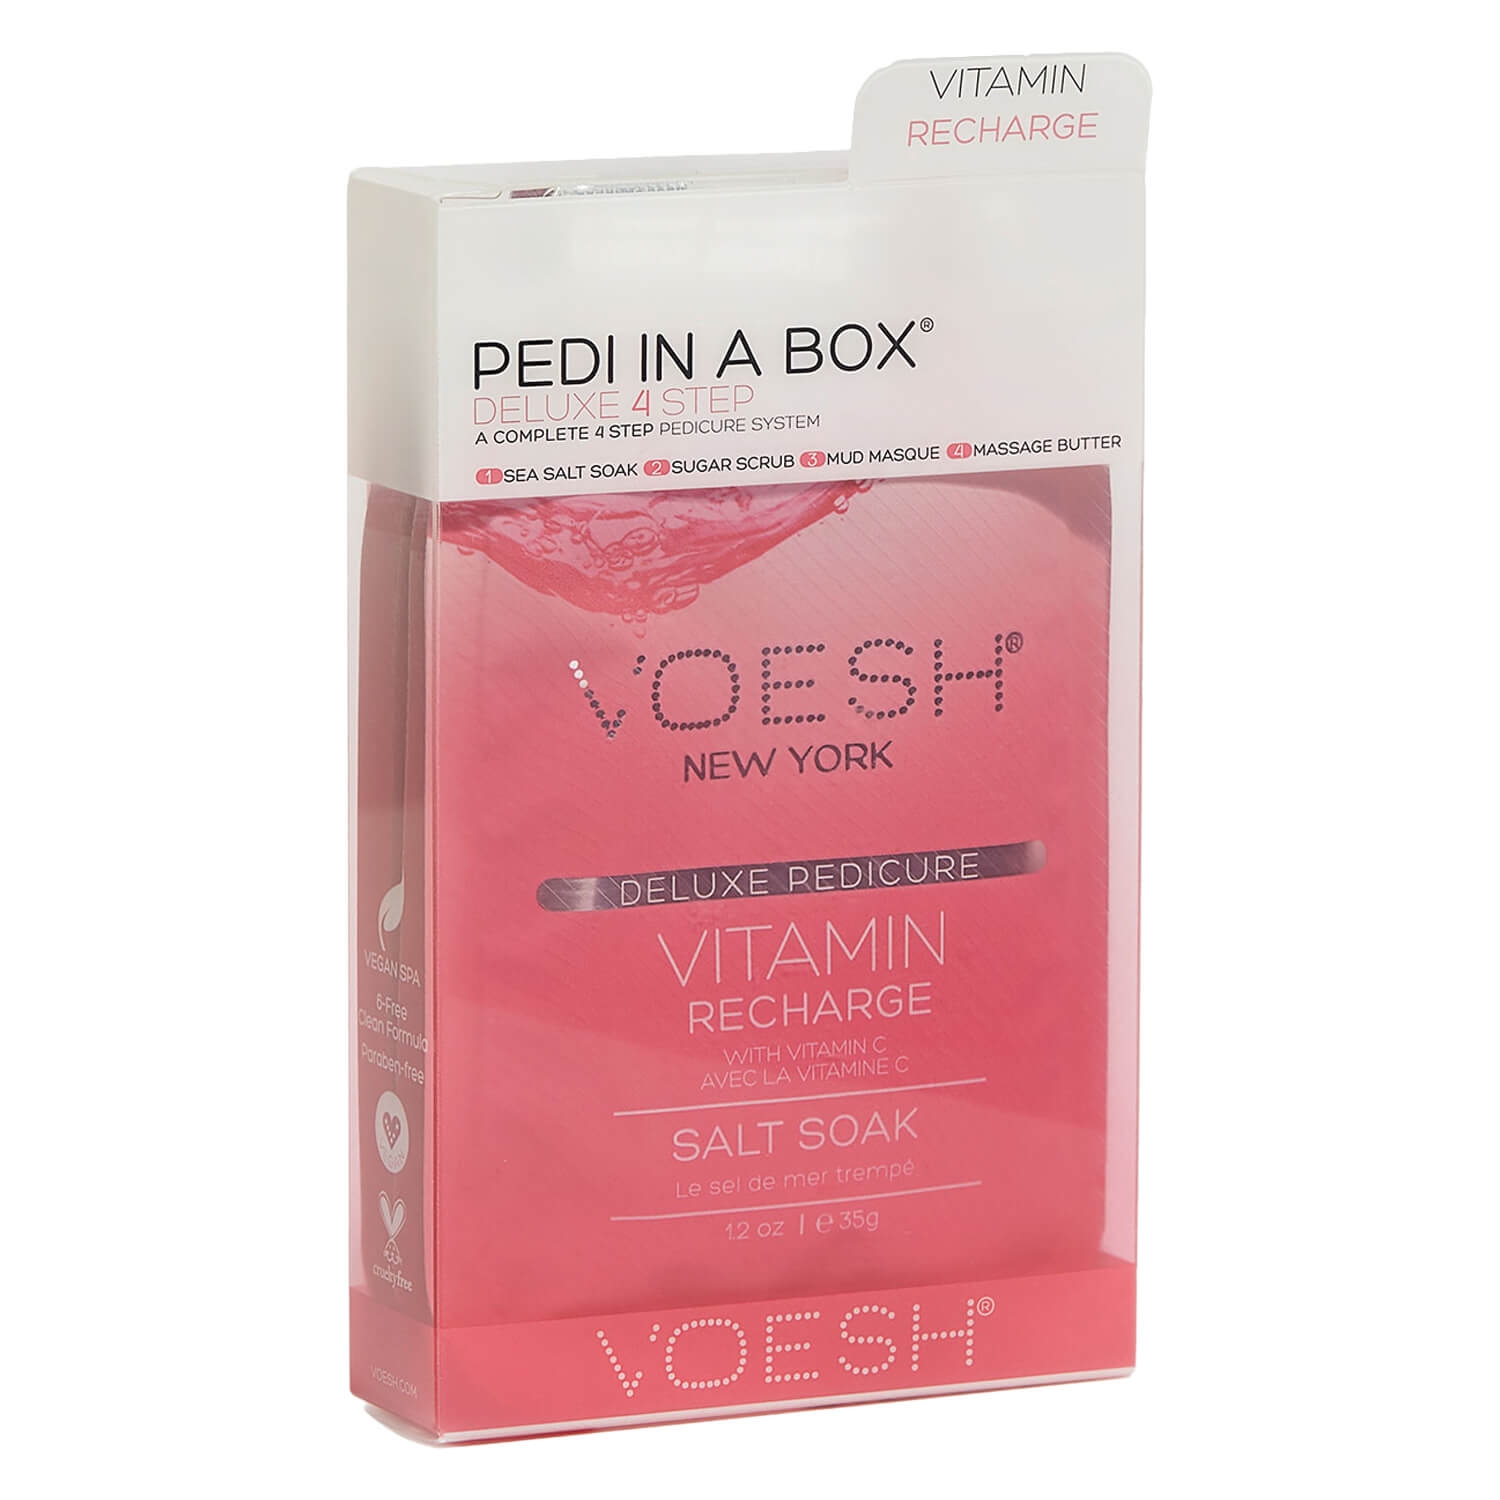 Produktbild von VOESH New York - Pedi In A Box 4 Step Vitamin Recharge